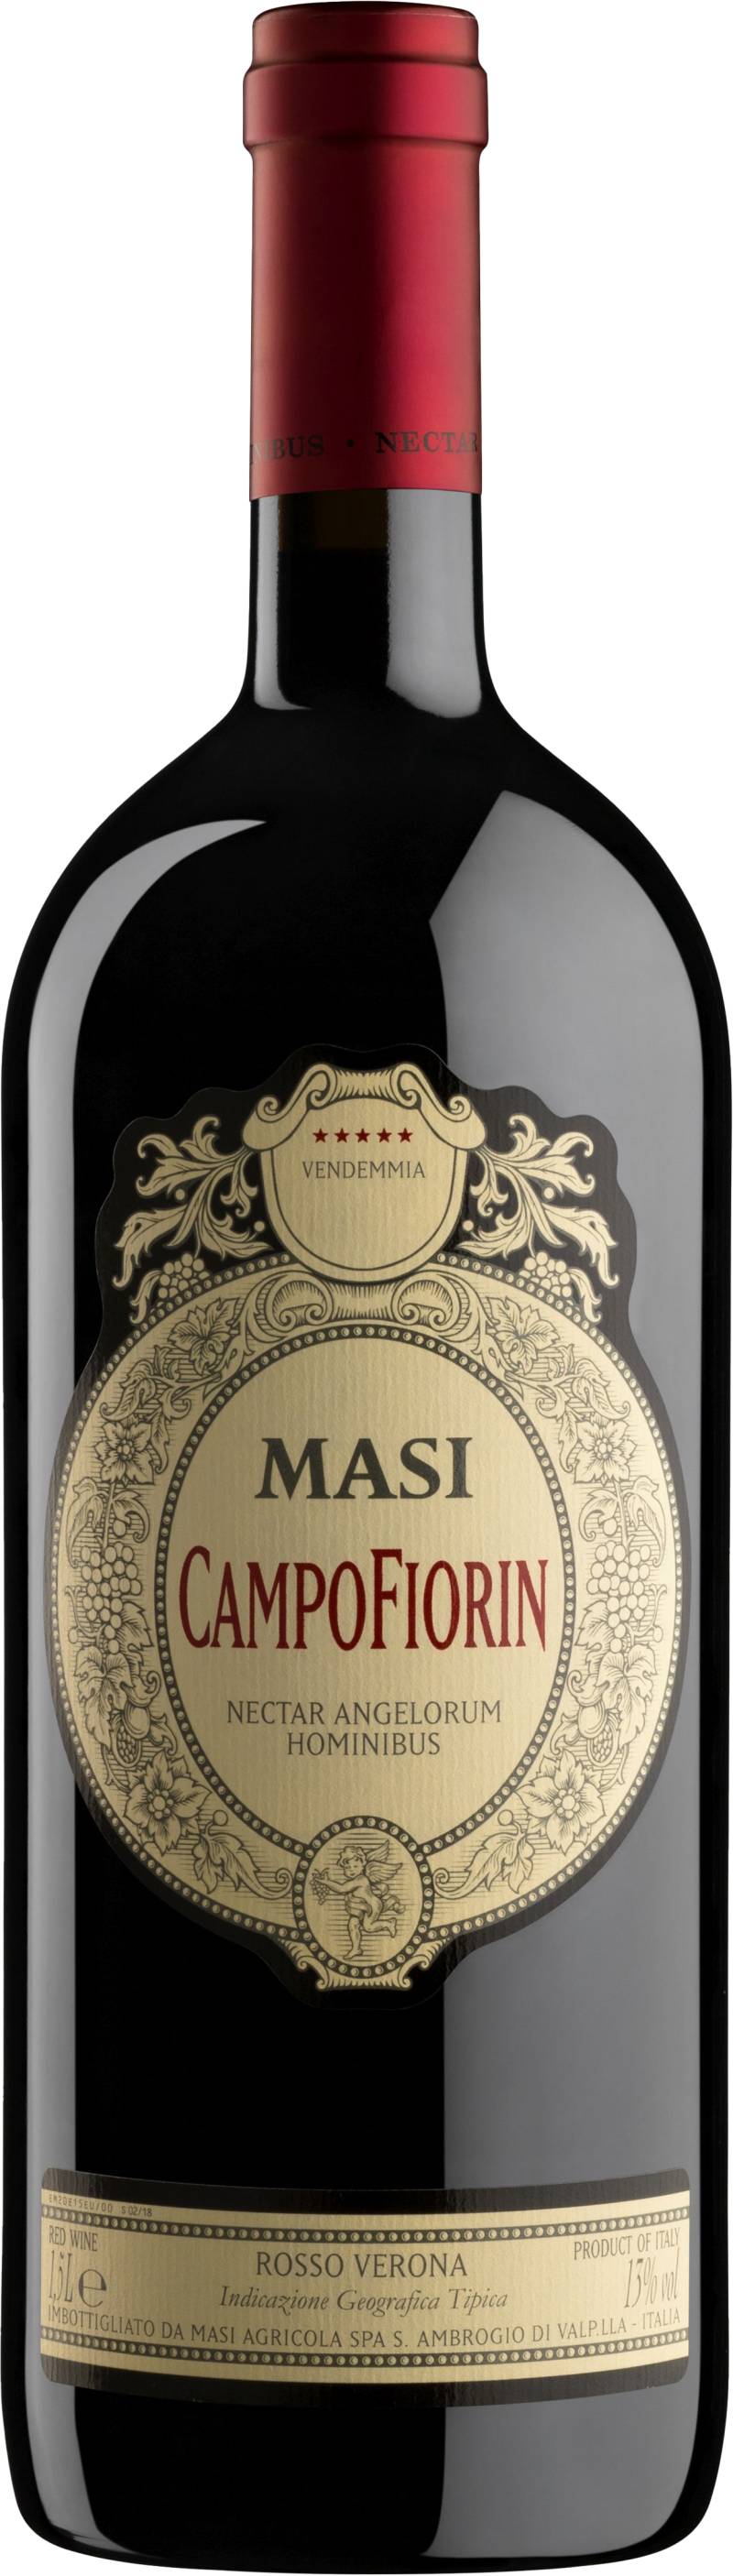 Masi Campofiorin Rosso del Veronese - 1,5l Magnumflasche